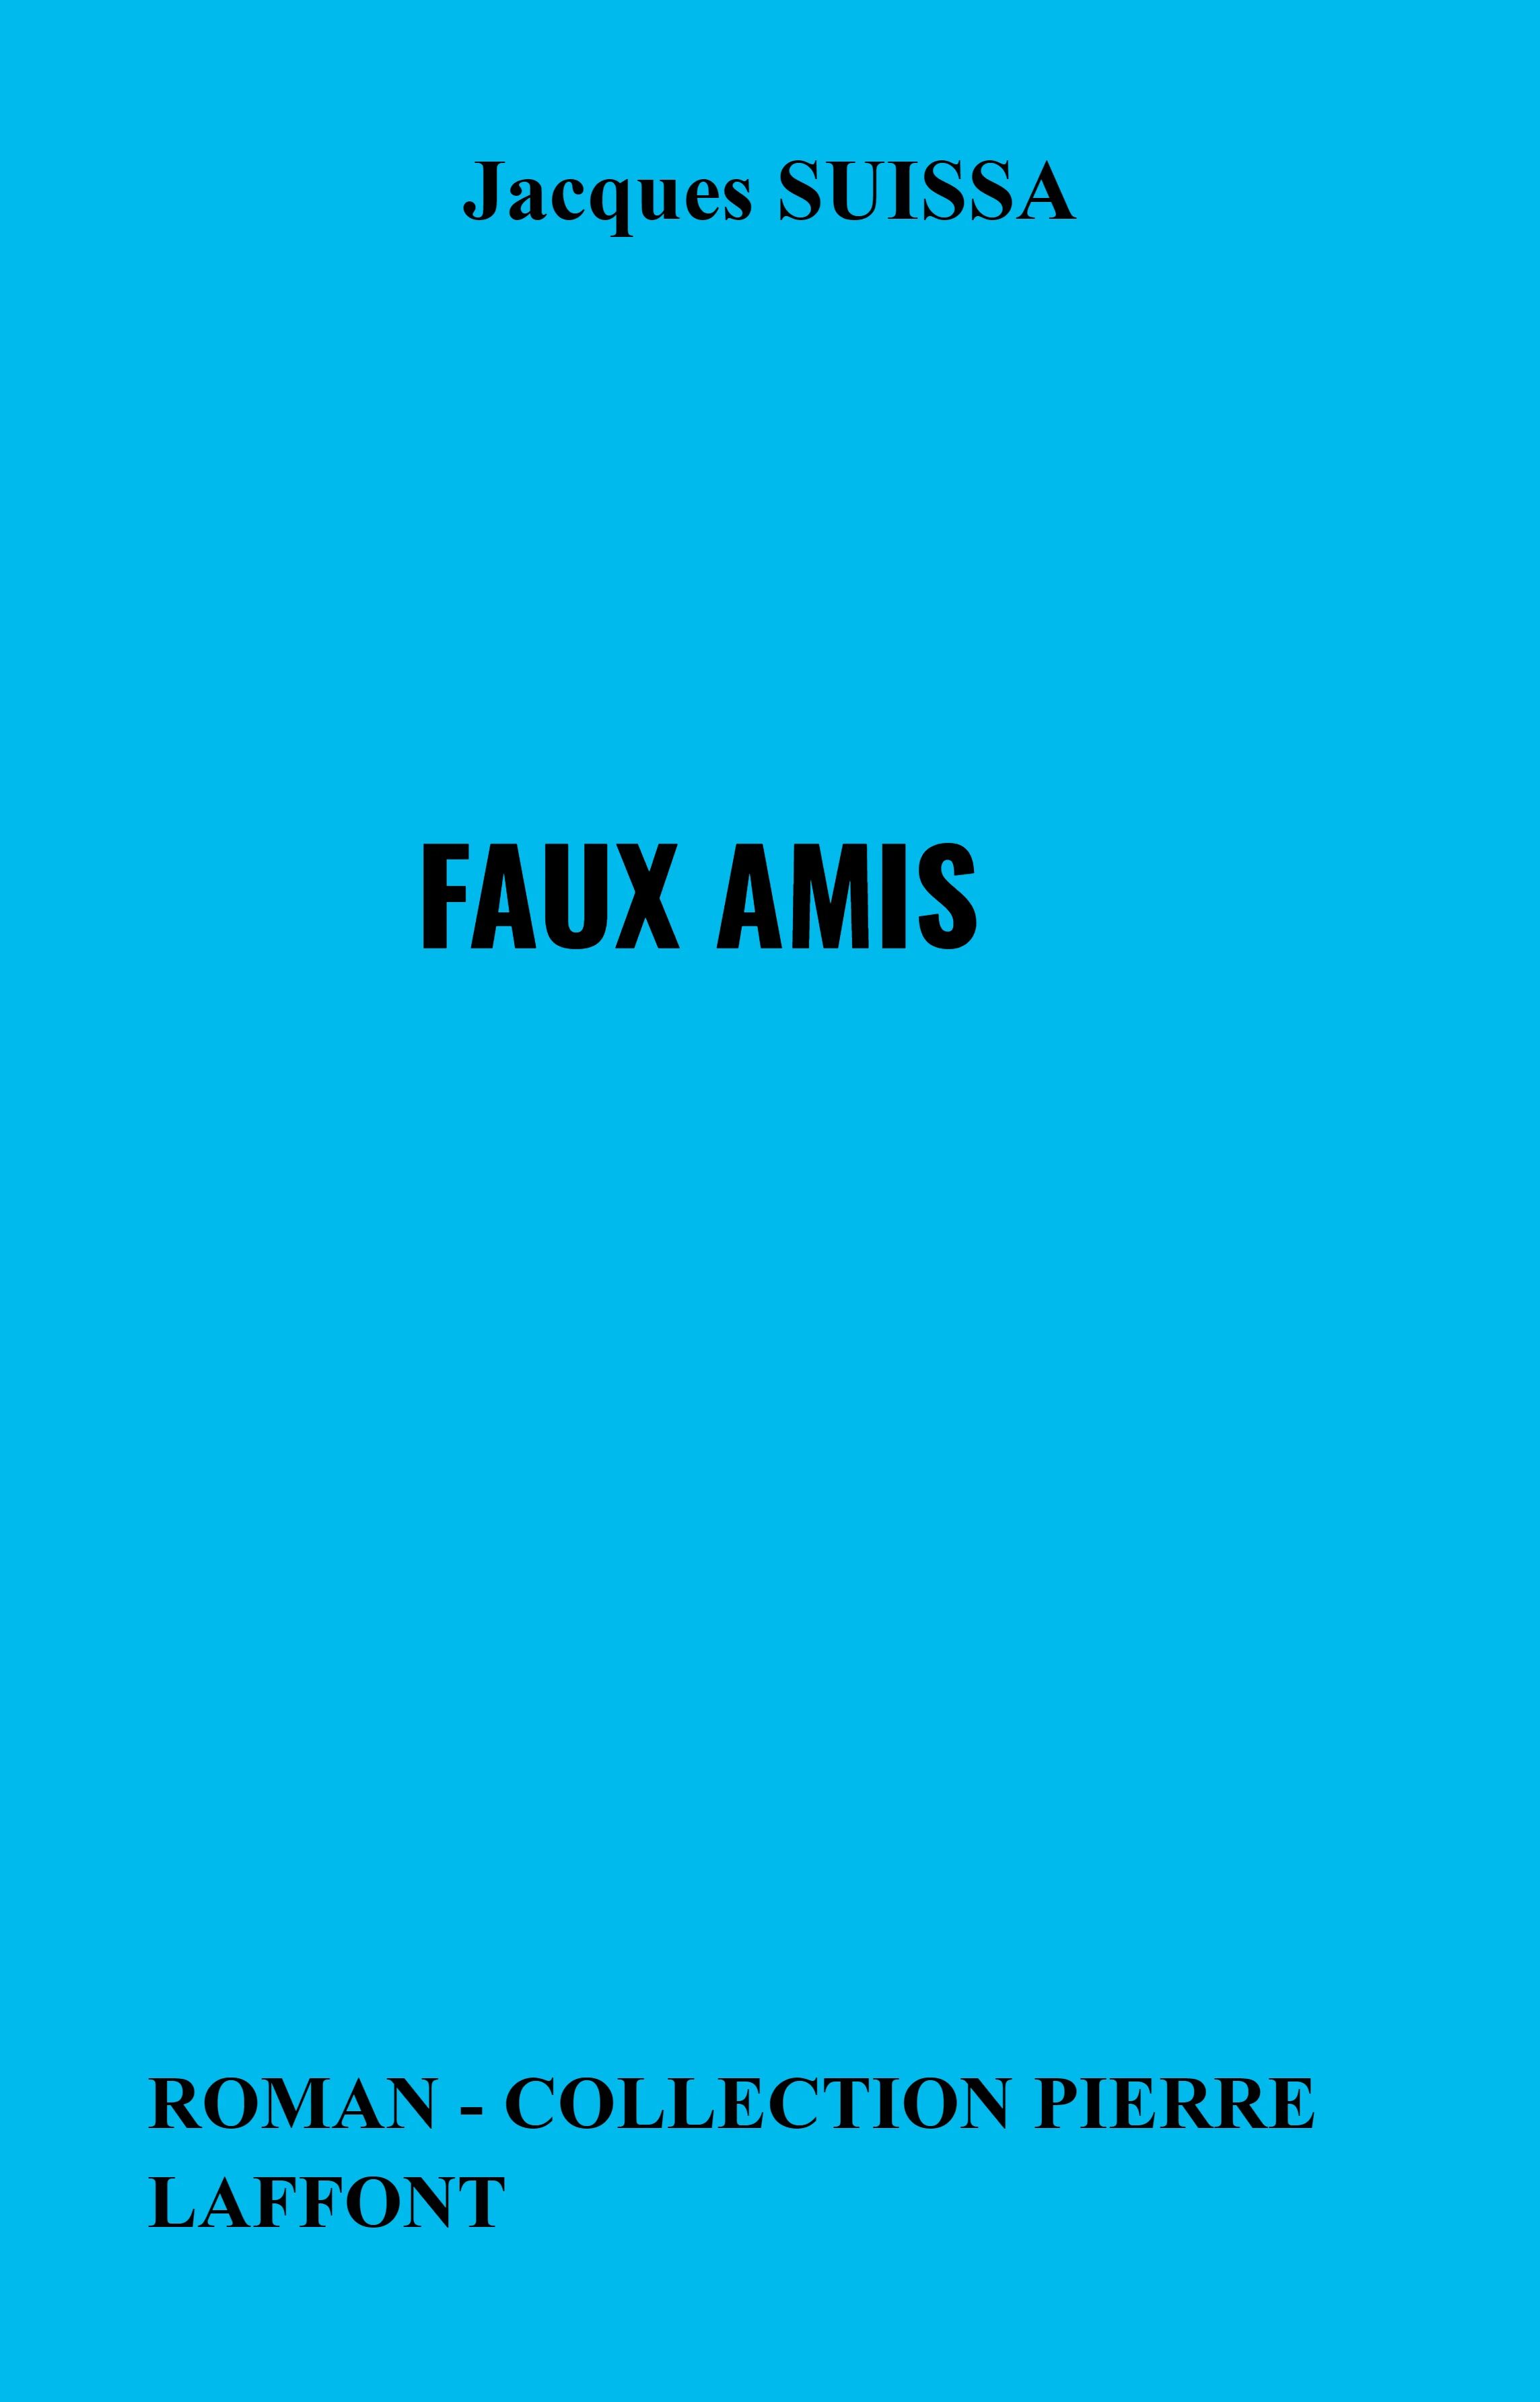 Fournisseur Cultura Faux Amis - Roman - Collection Pierre Laffont